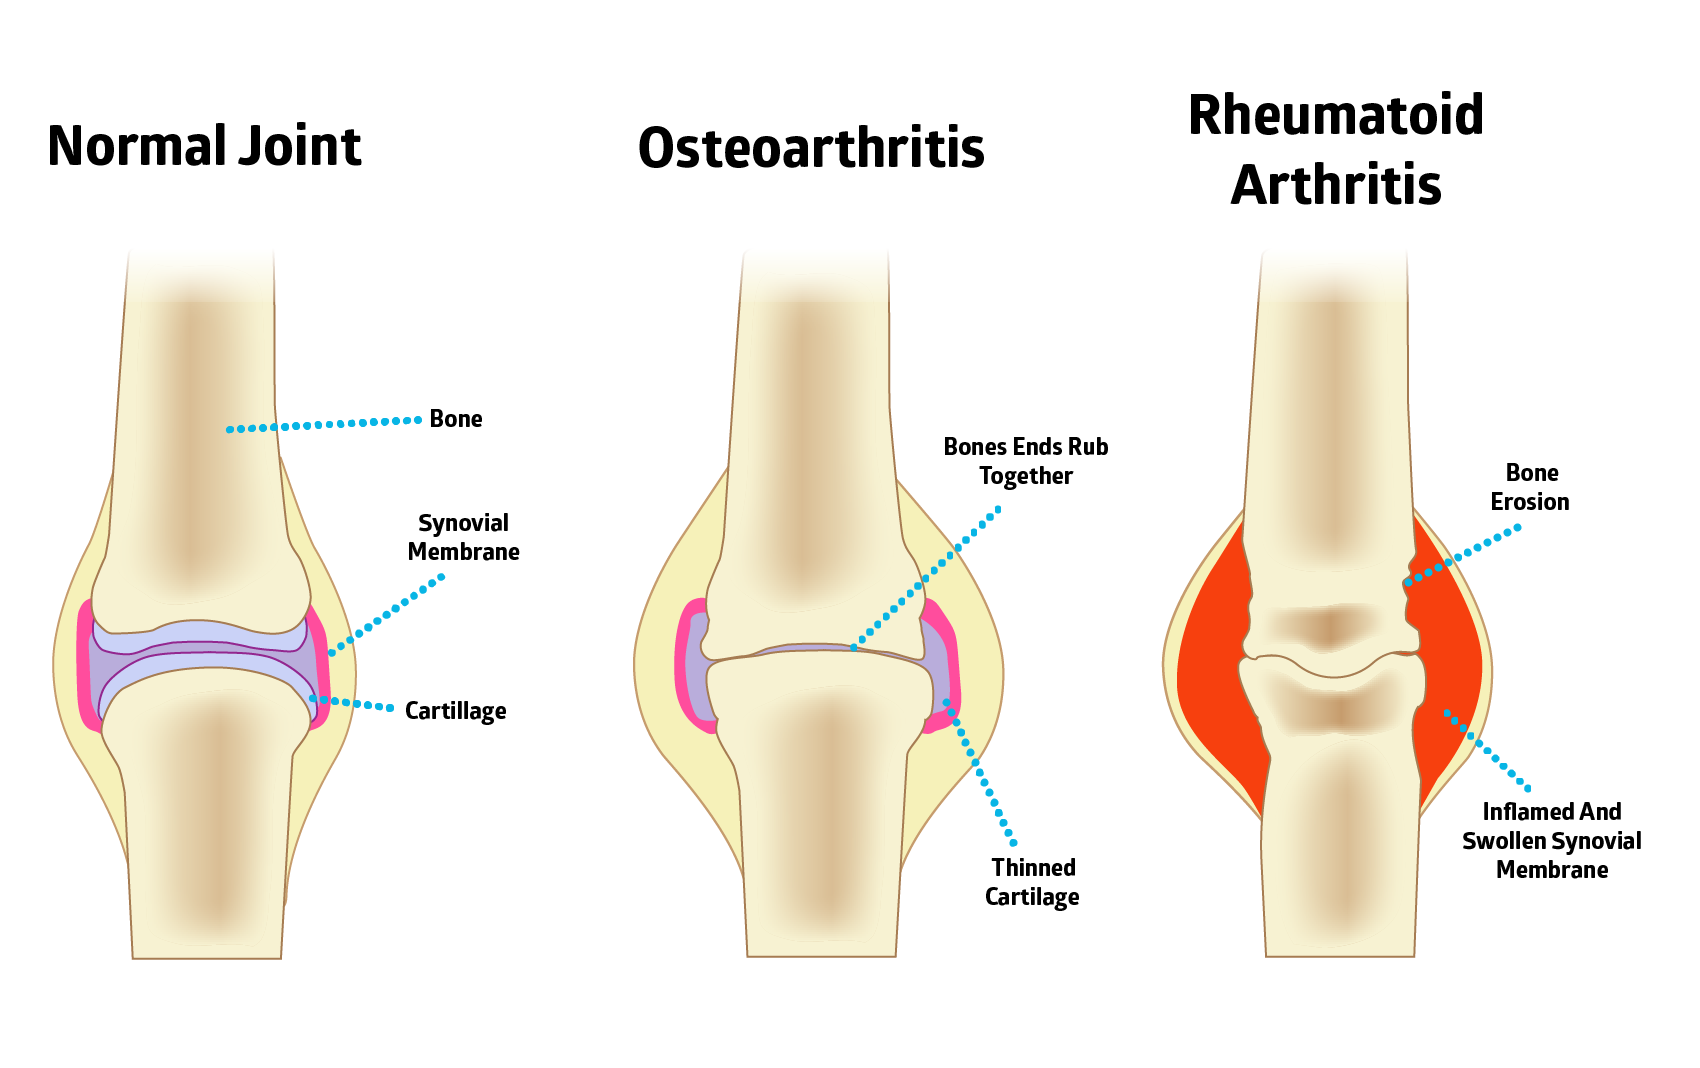 osteoarthritis vs rheumatoid arthritis comparison 